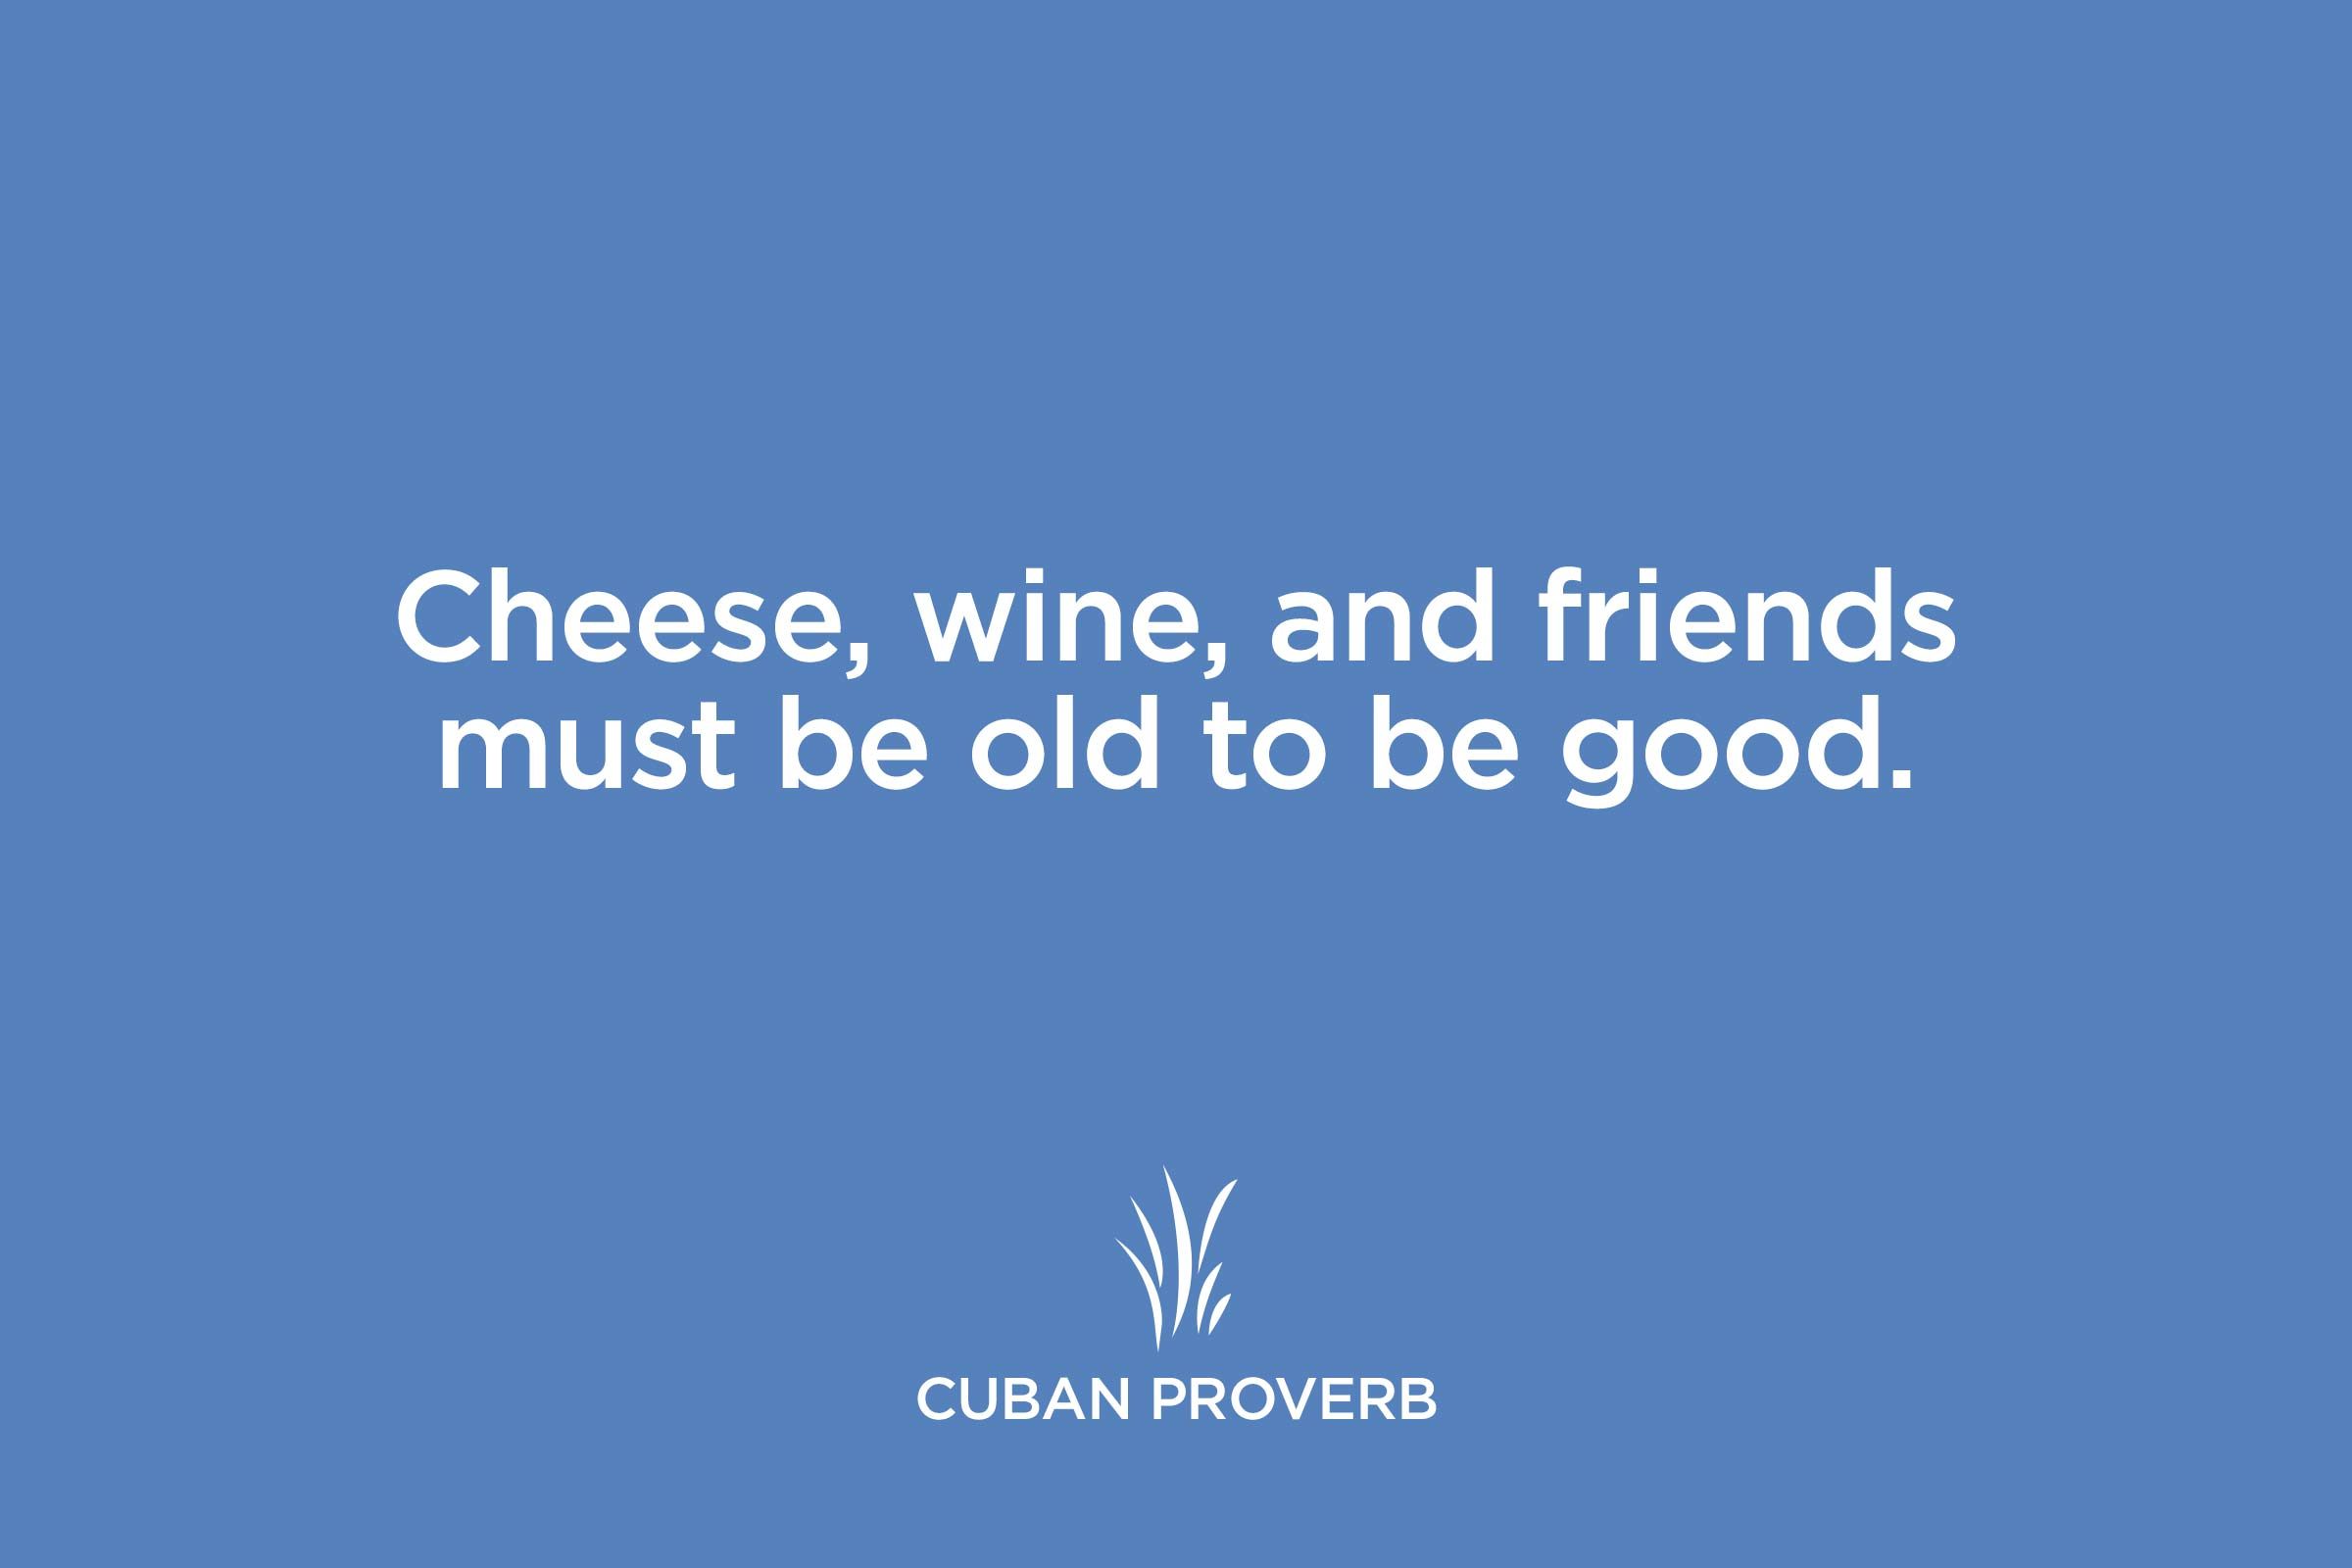 cuban proverb